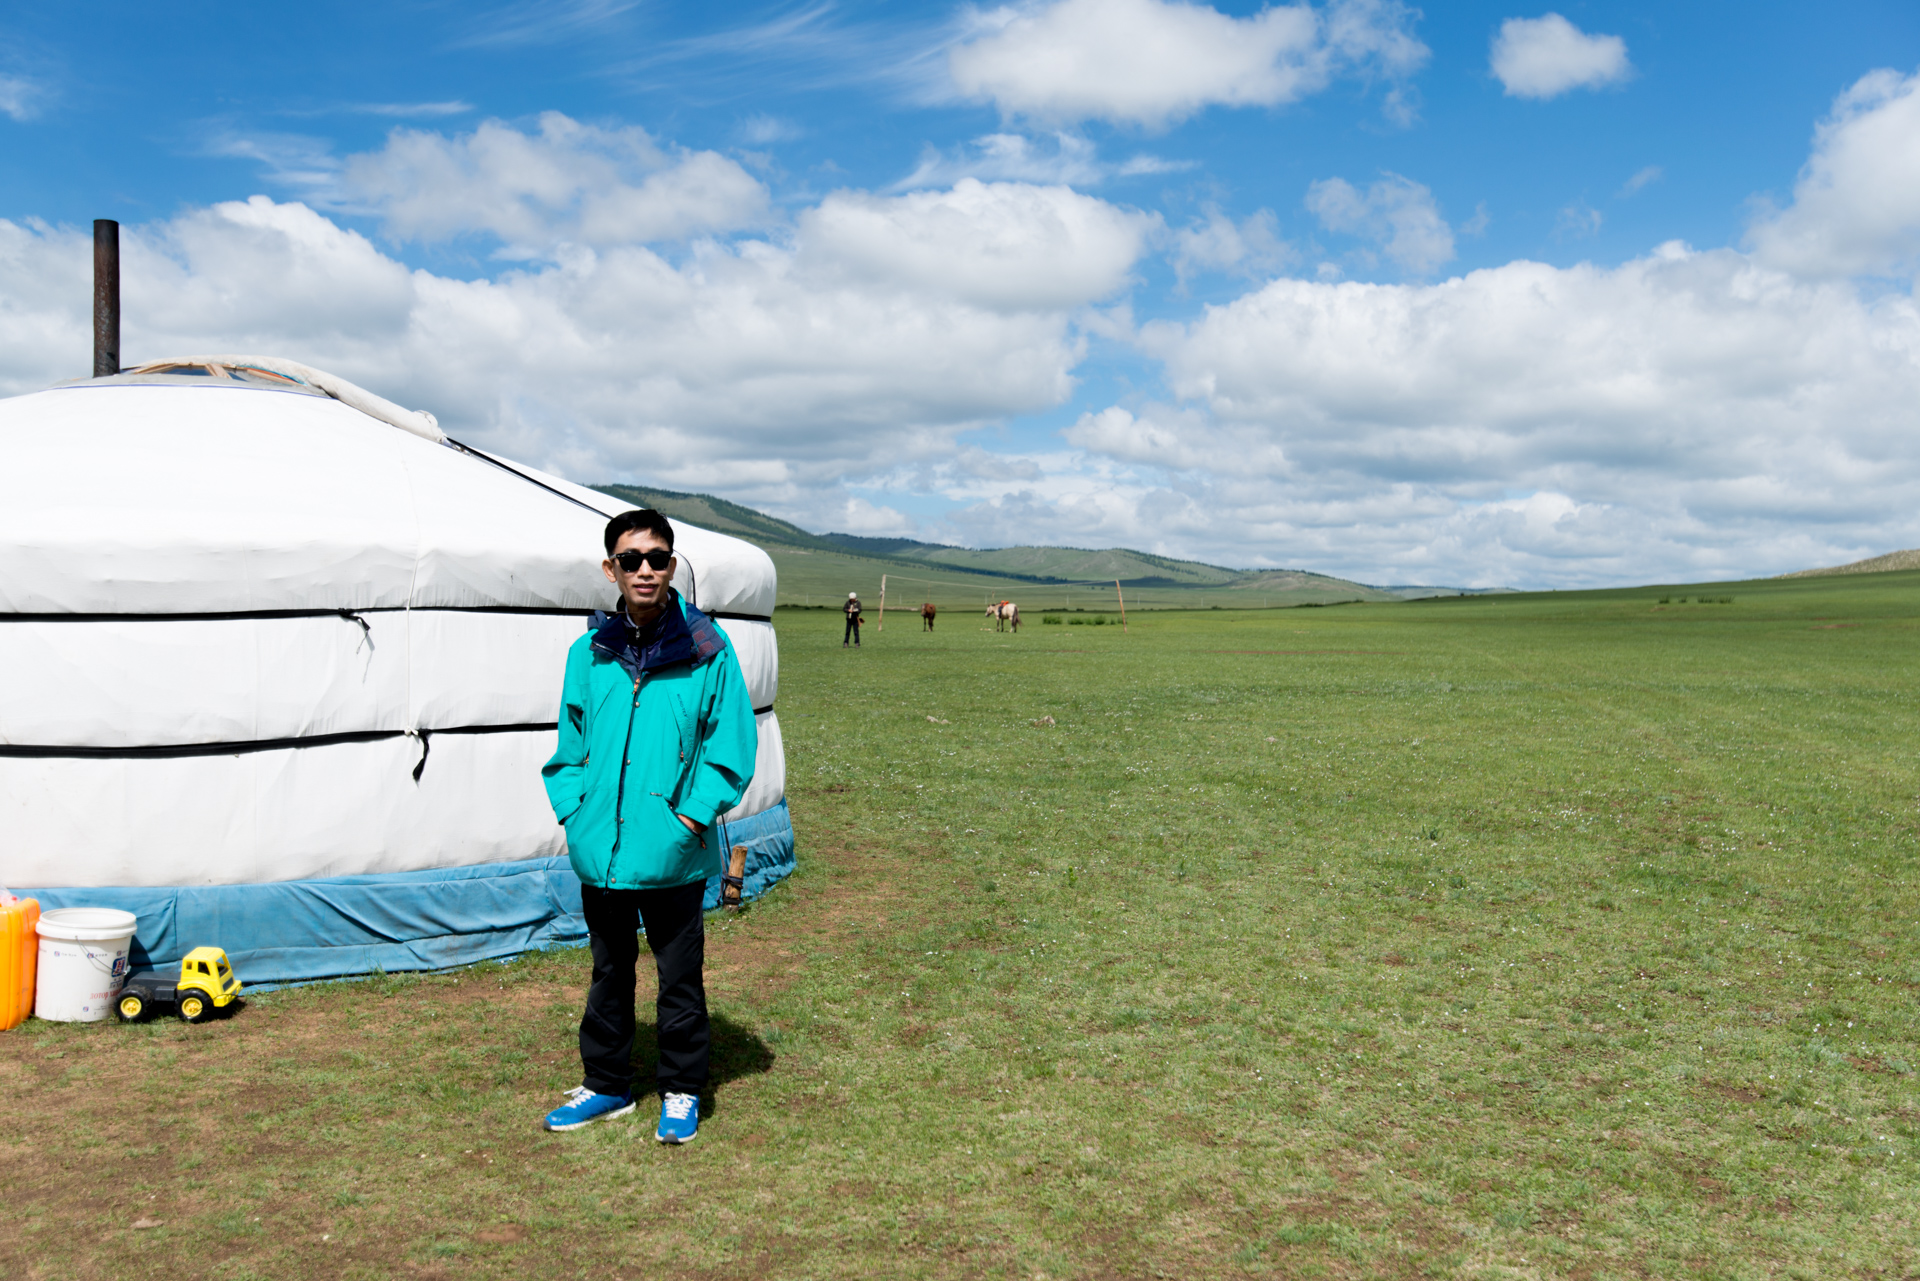 150802_470.jpg : 몽골 학습탐사 2진 사진 8월2일_1 ...자